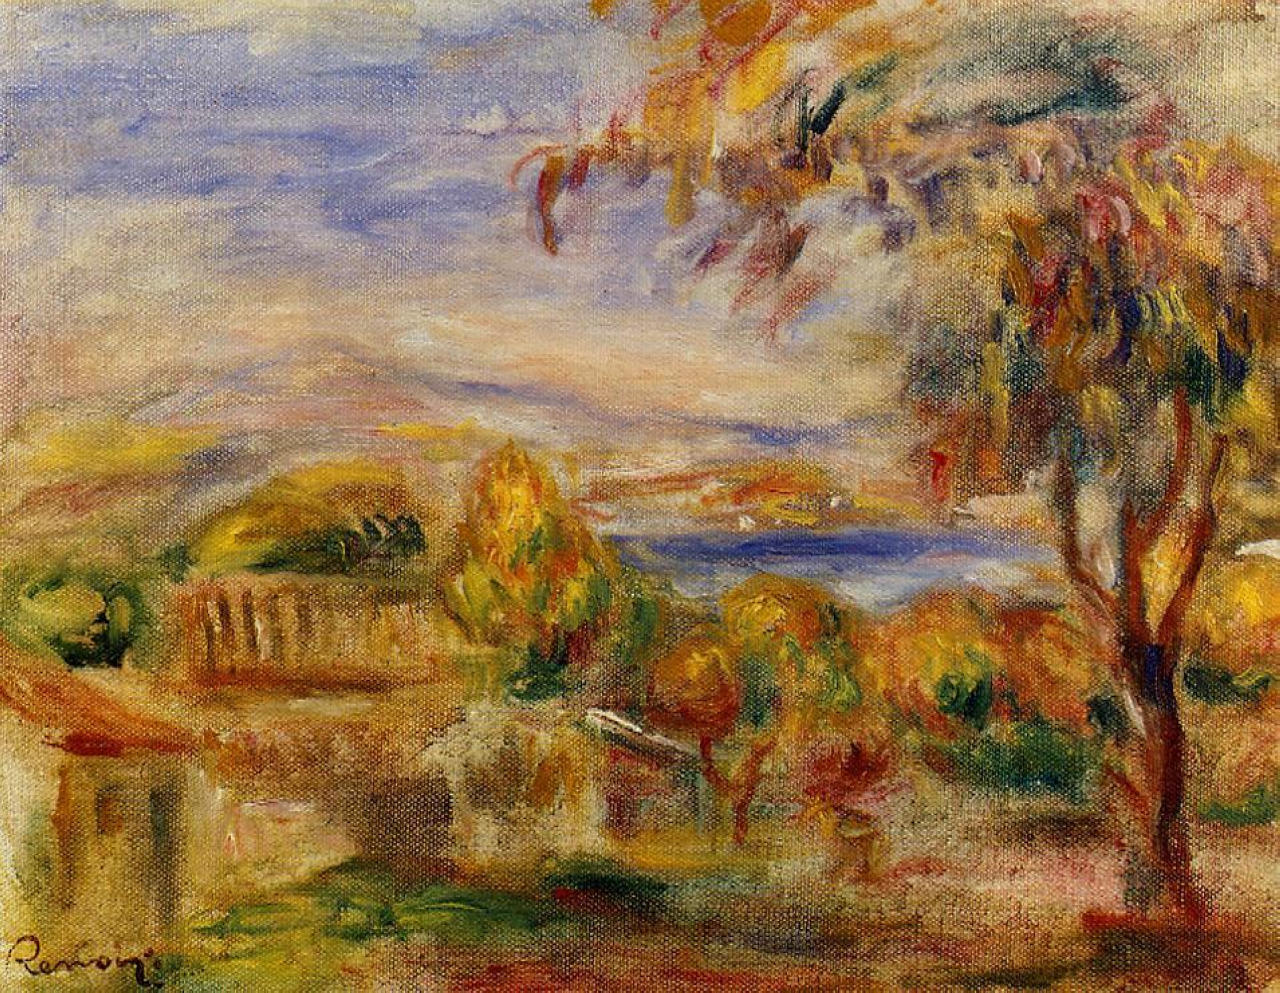 Pierre+Auguste+Renoir-1841-1-19 (532).jpg